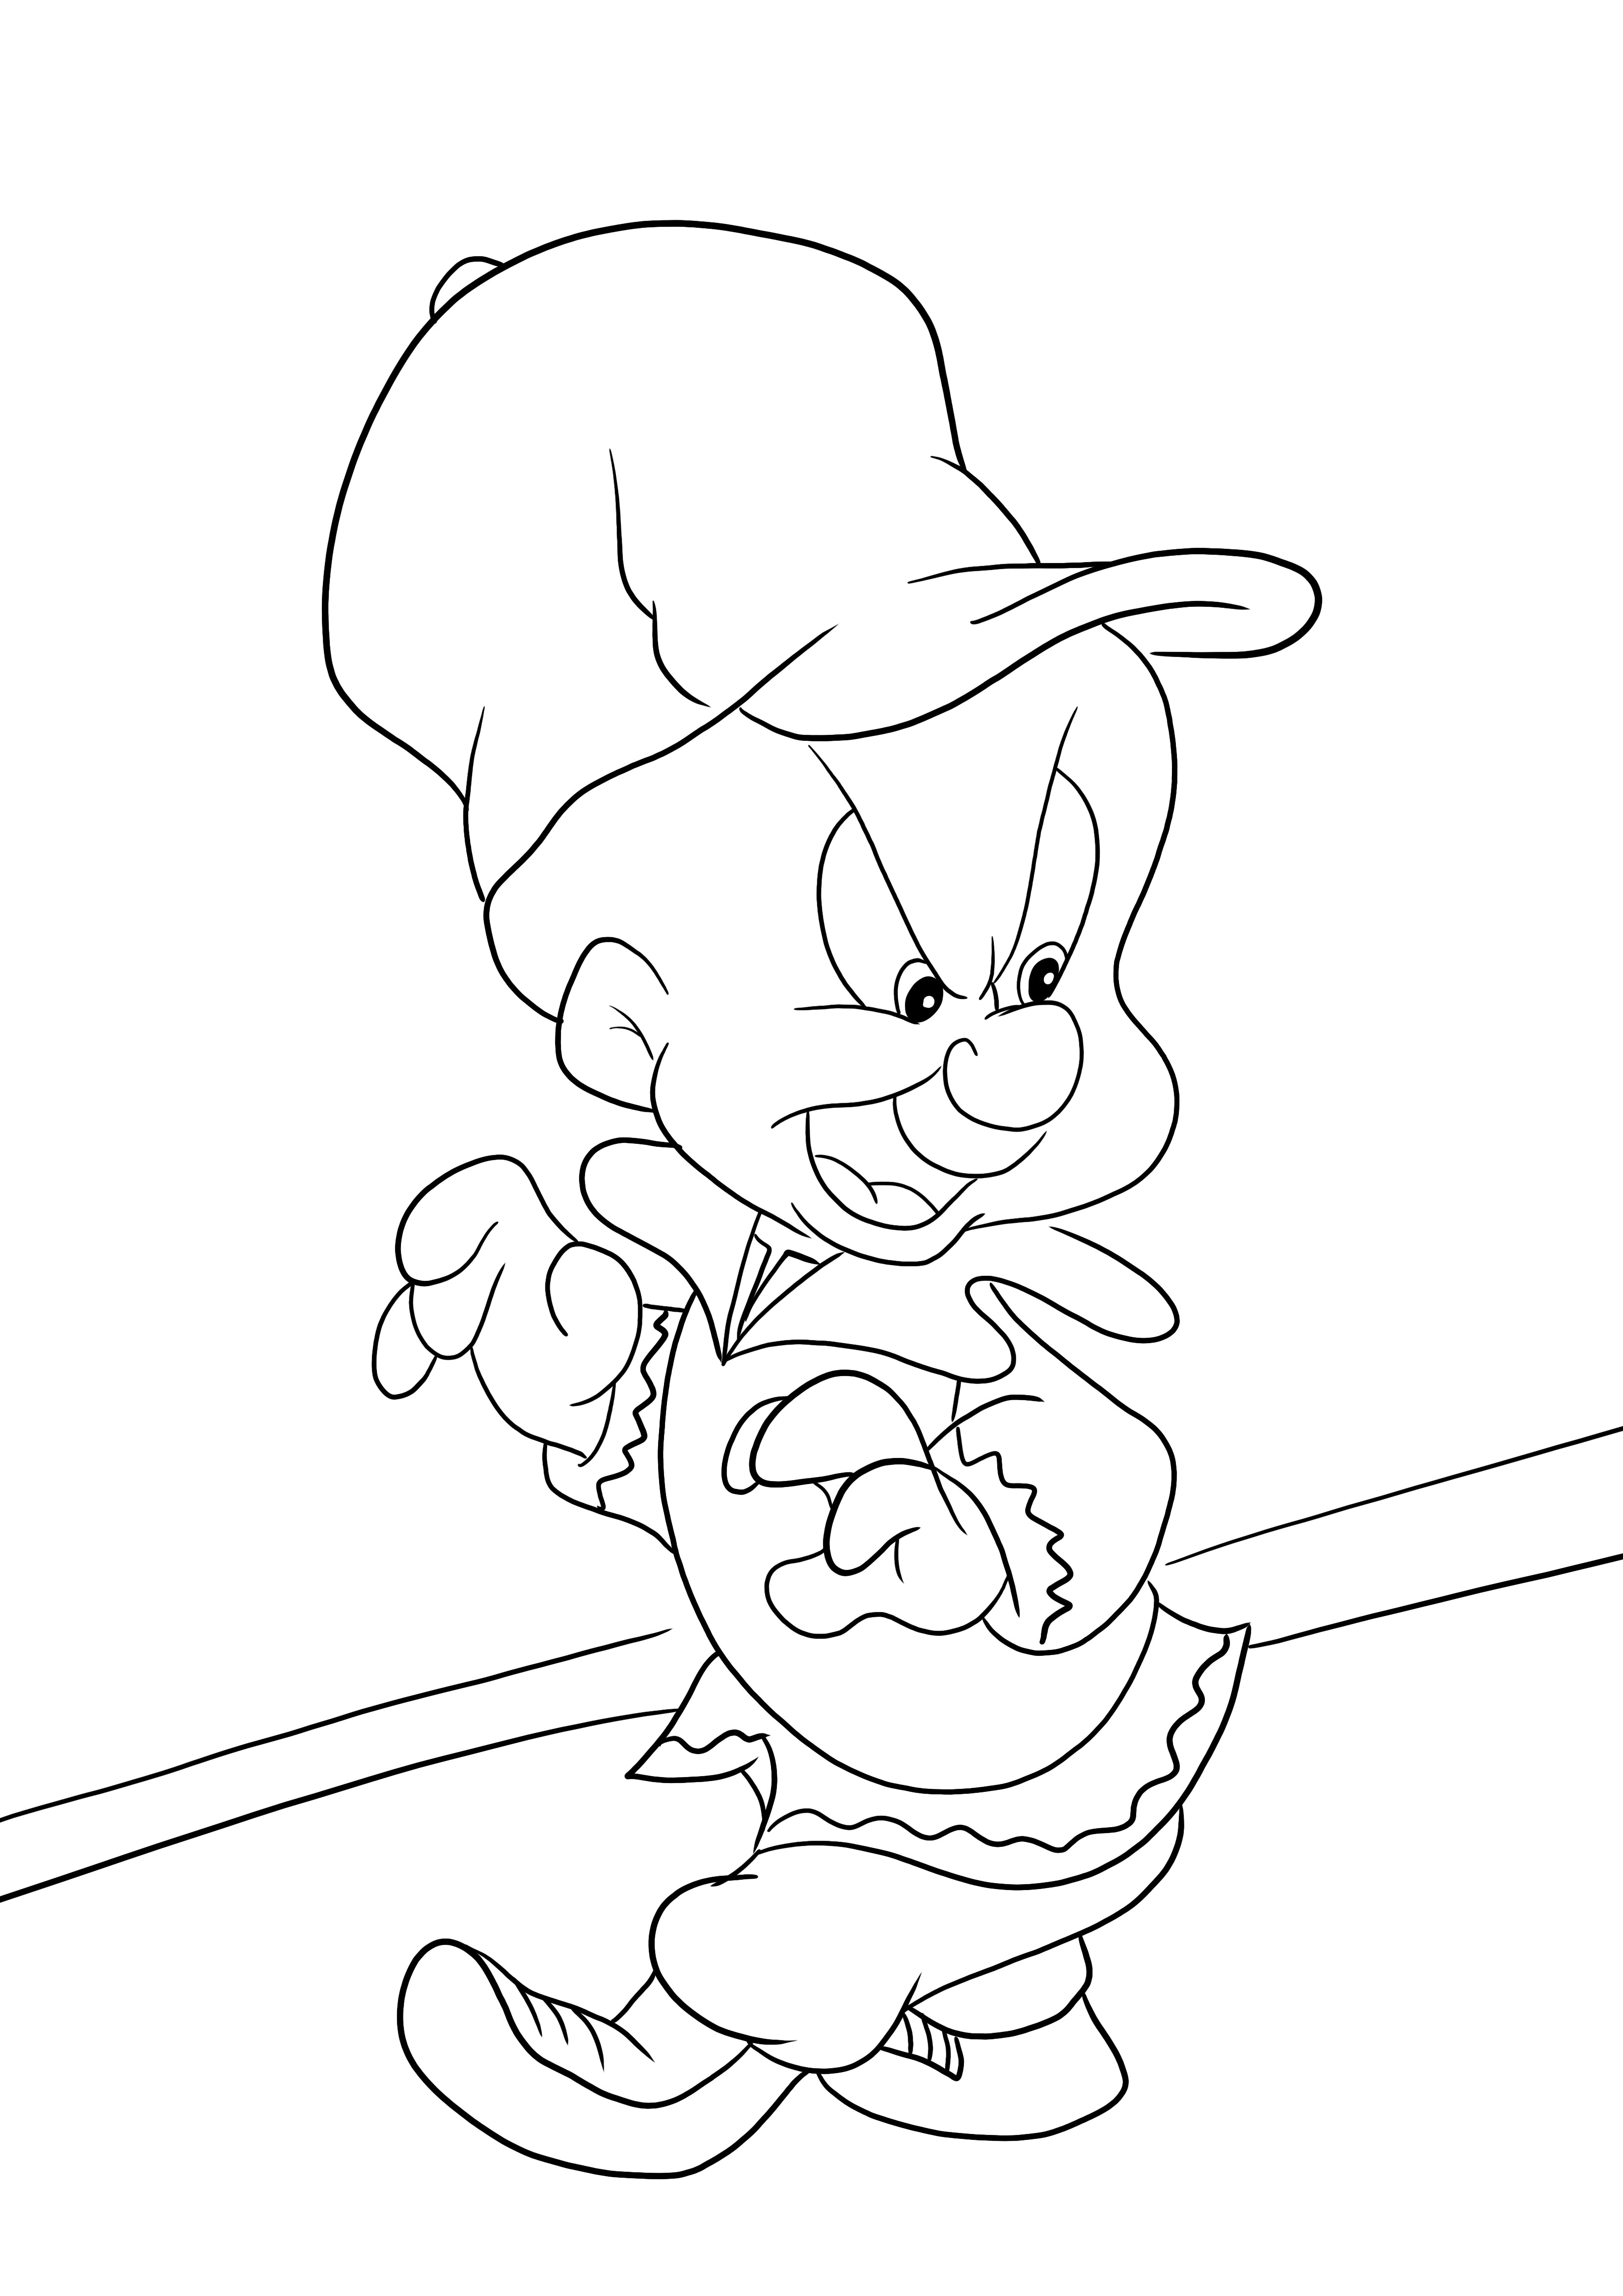 Elmer Fudd de Looney Tunes - download gratuito e página para colorir